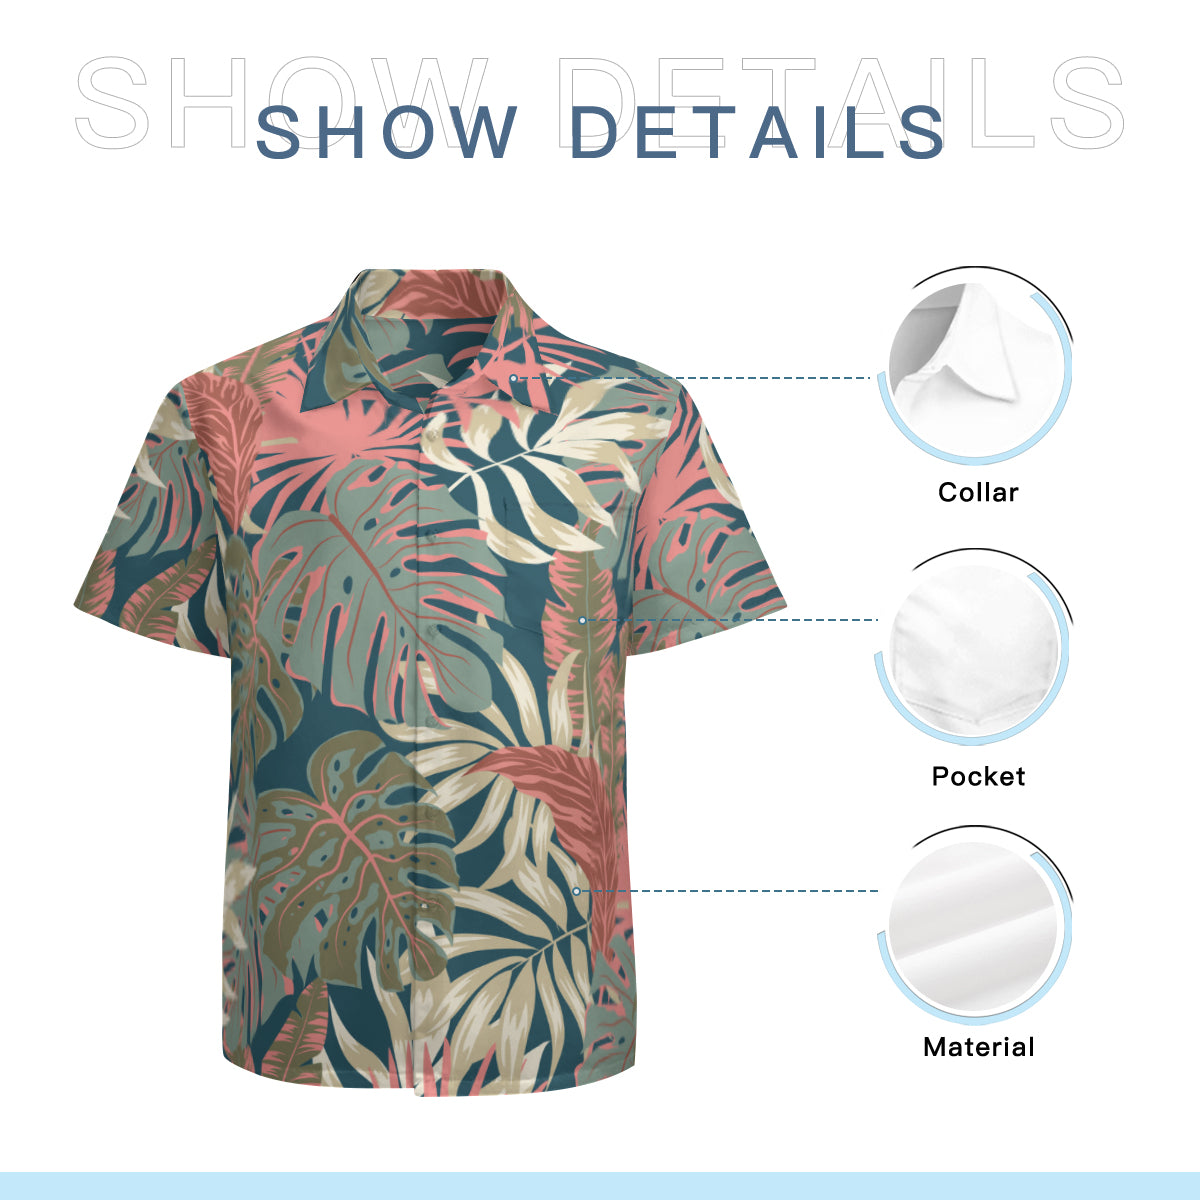 Hawaiian Shirt Men, Tropical Shirt Men, Leaf Shirt Men, Pink Teal Shirt Men, Nature Shirt Men, Spring Summer Shirt Men